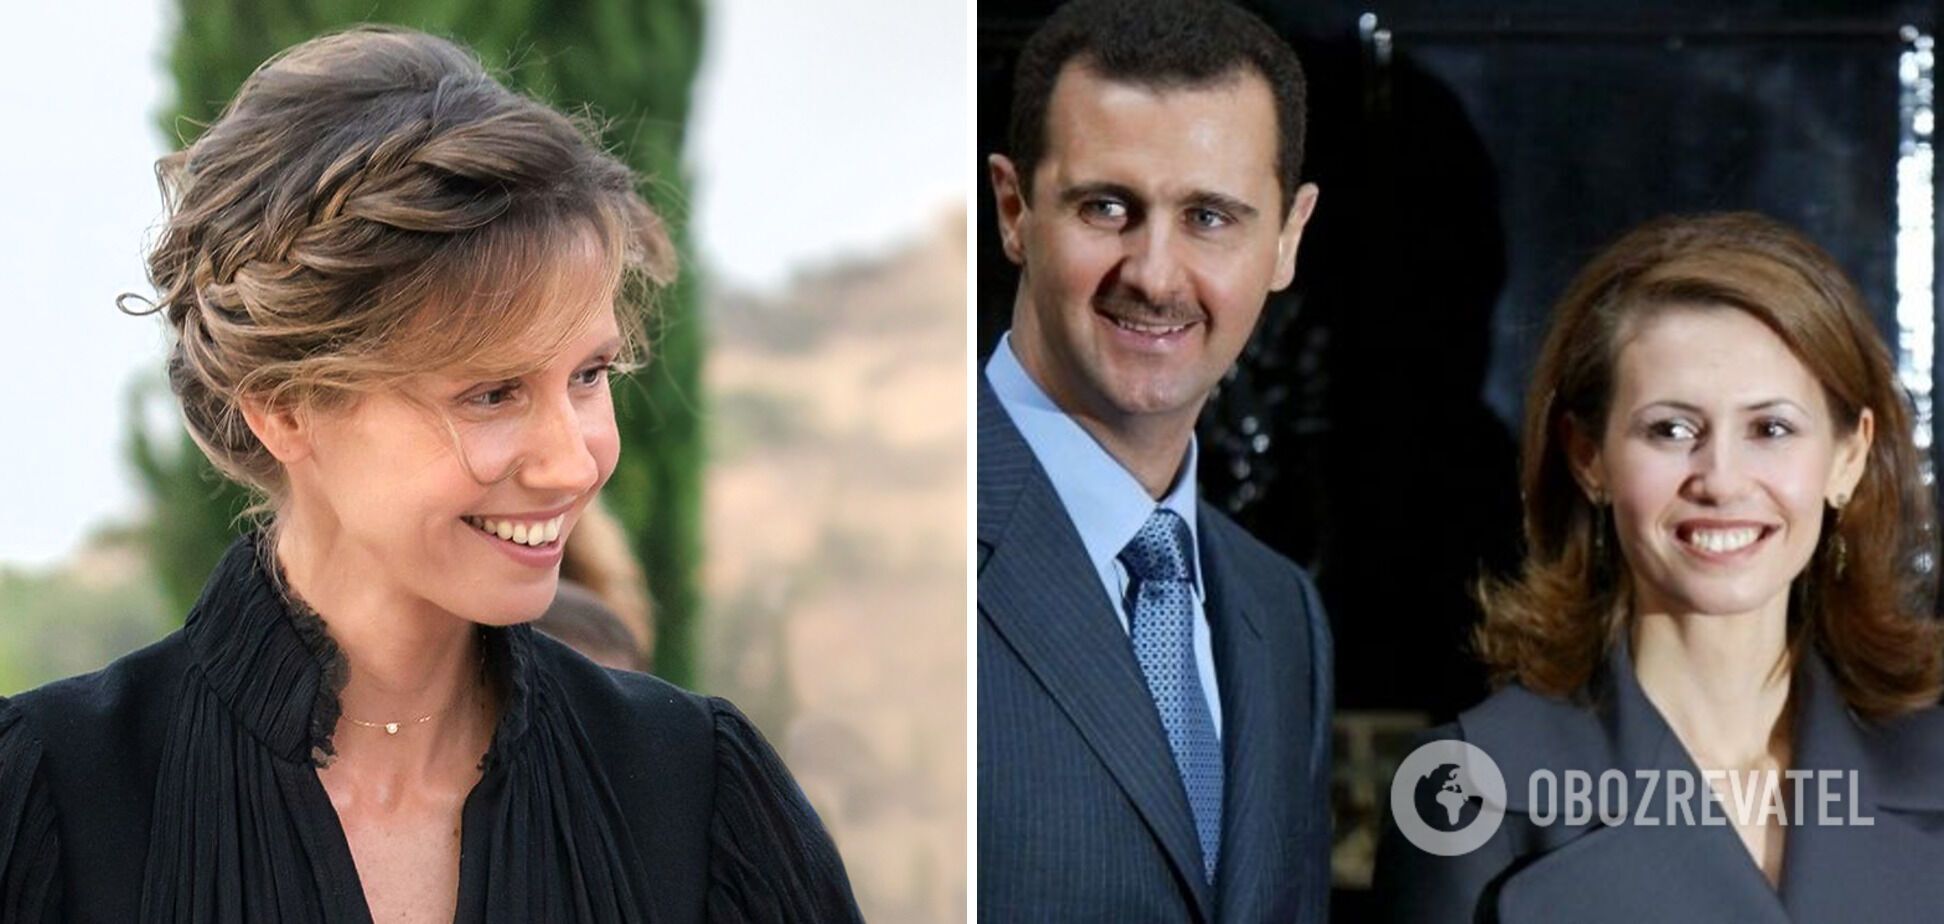 Асма аль-Асад является первой леди Сирии